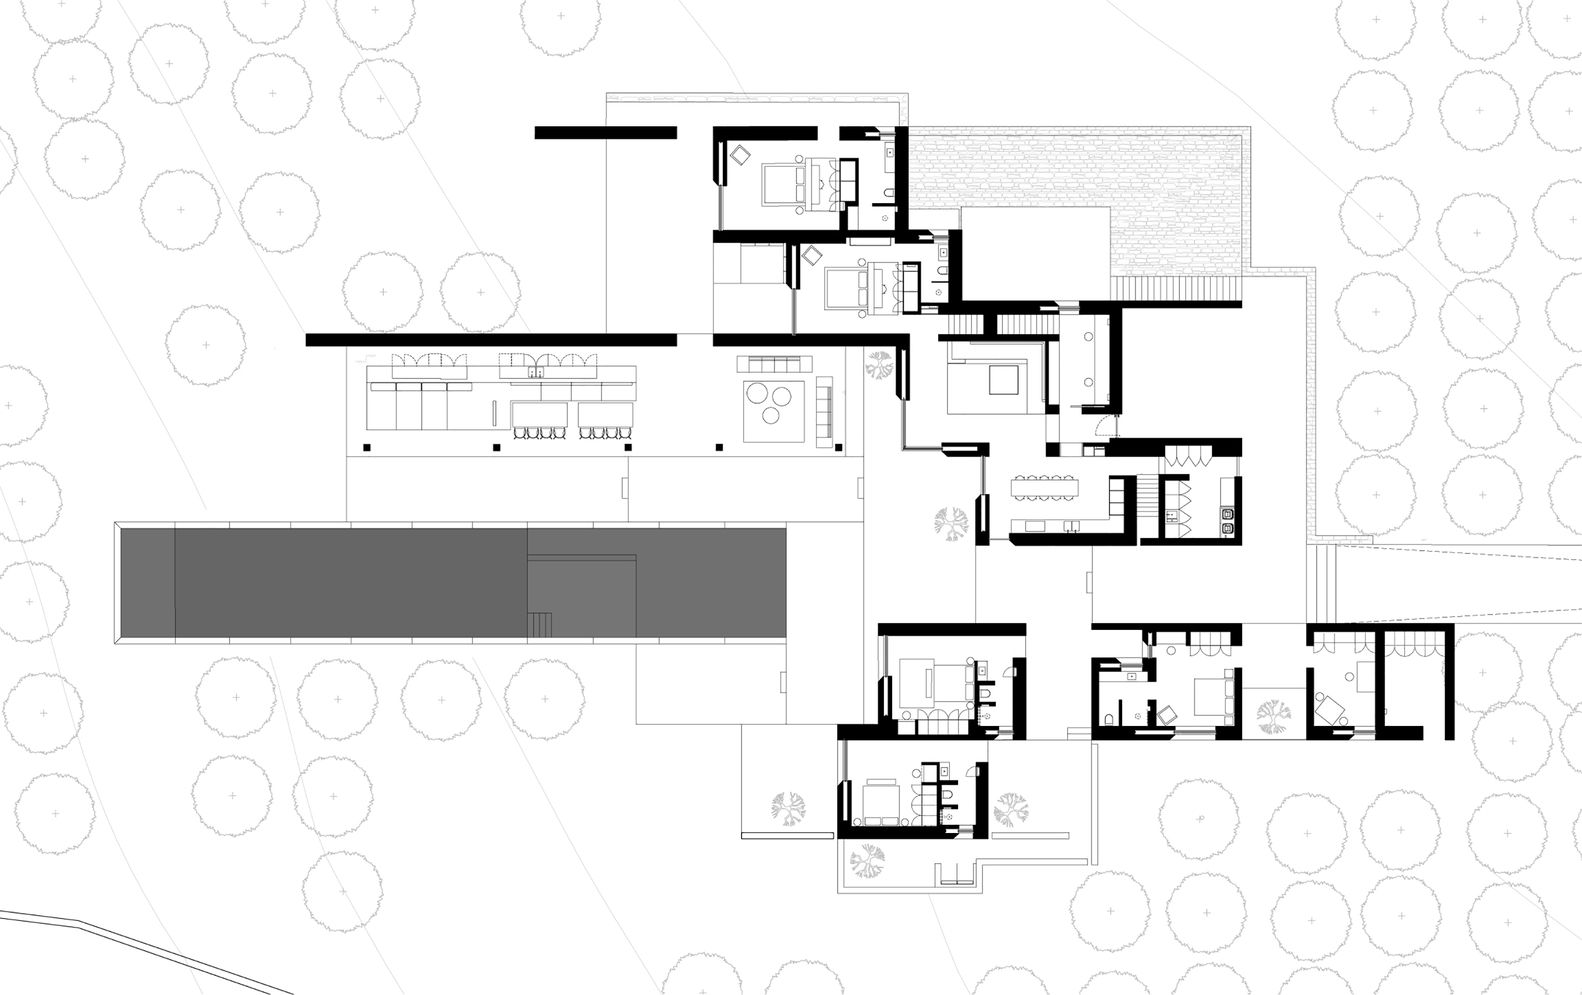 Studio Seilern Architects,国外海景别墅设计案例,别墅设计,爱琴海,希腊,极简主义,白色极简风格别墅,别墅设计方案